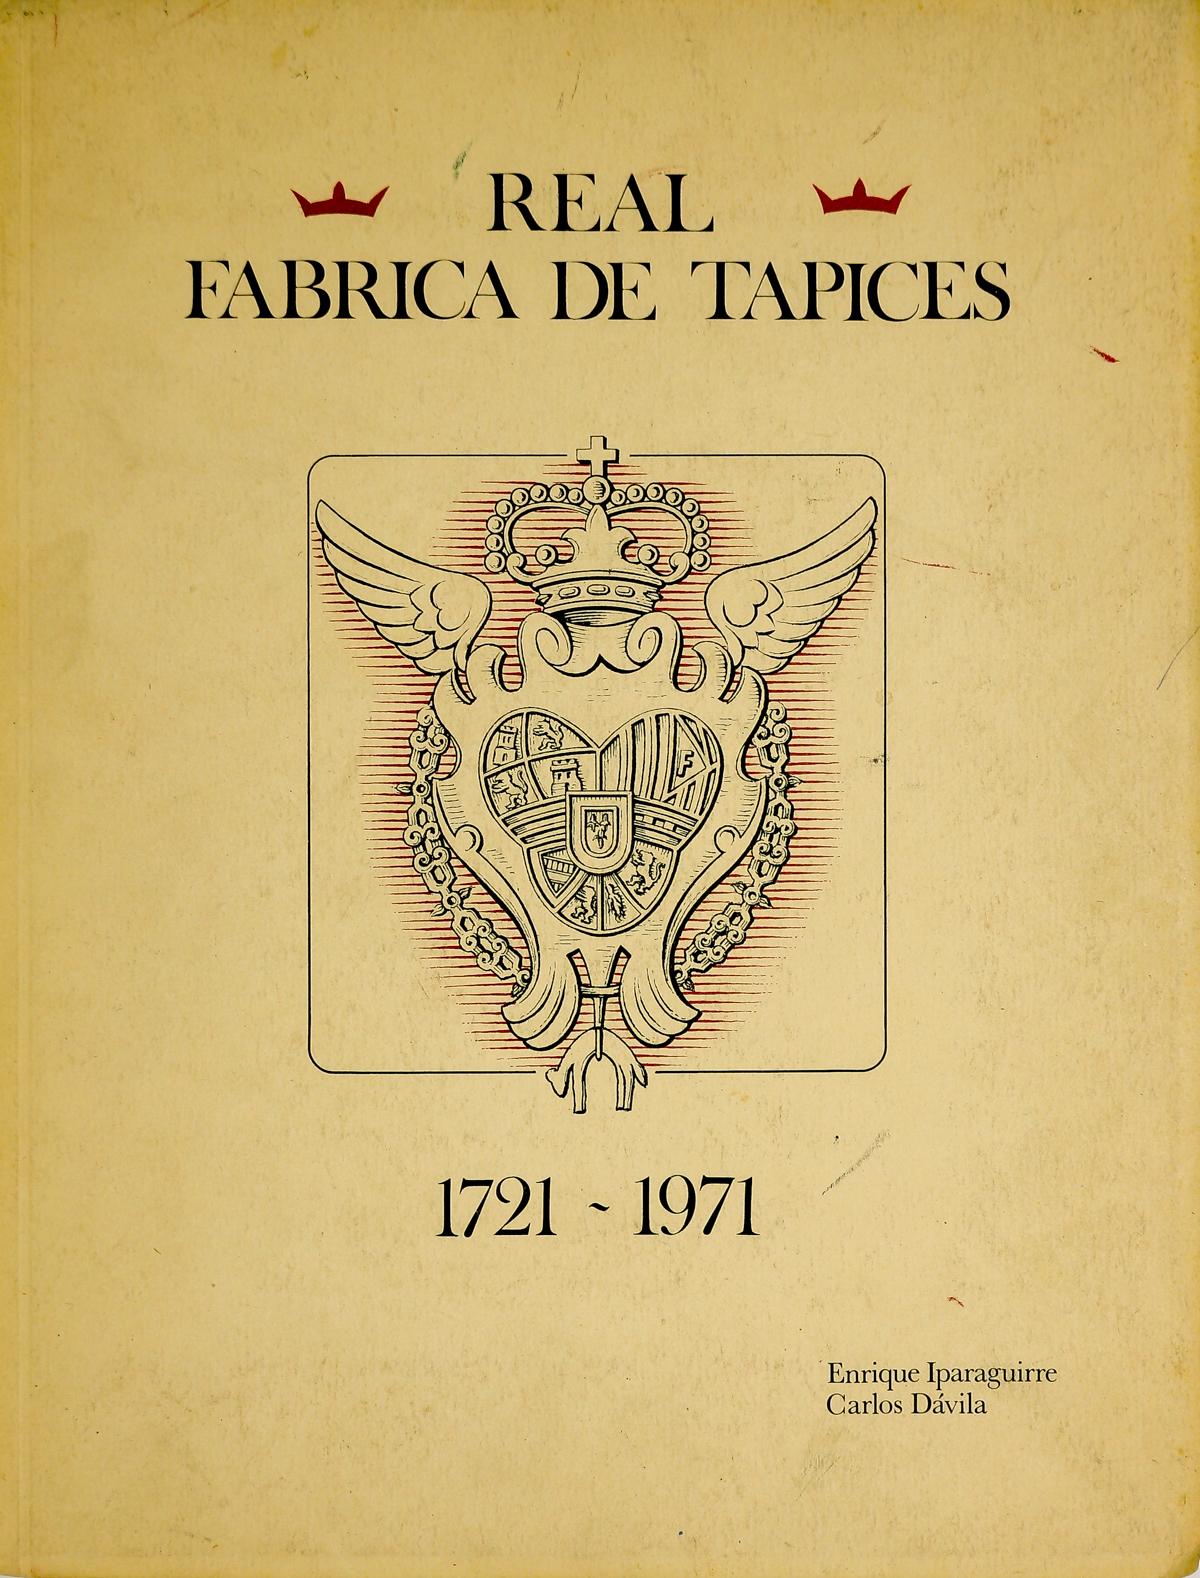 "REAL FÁBRICA DE TAPICES 1721-1971"